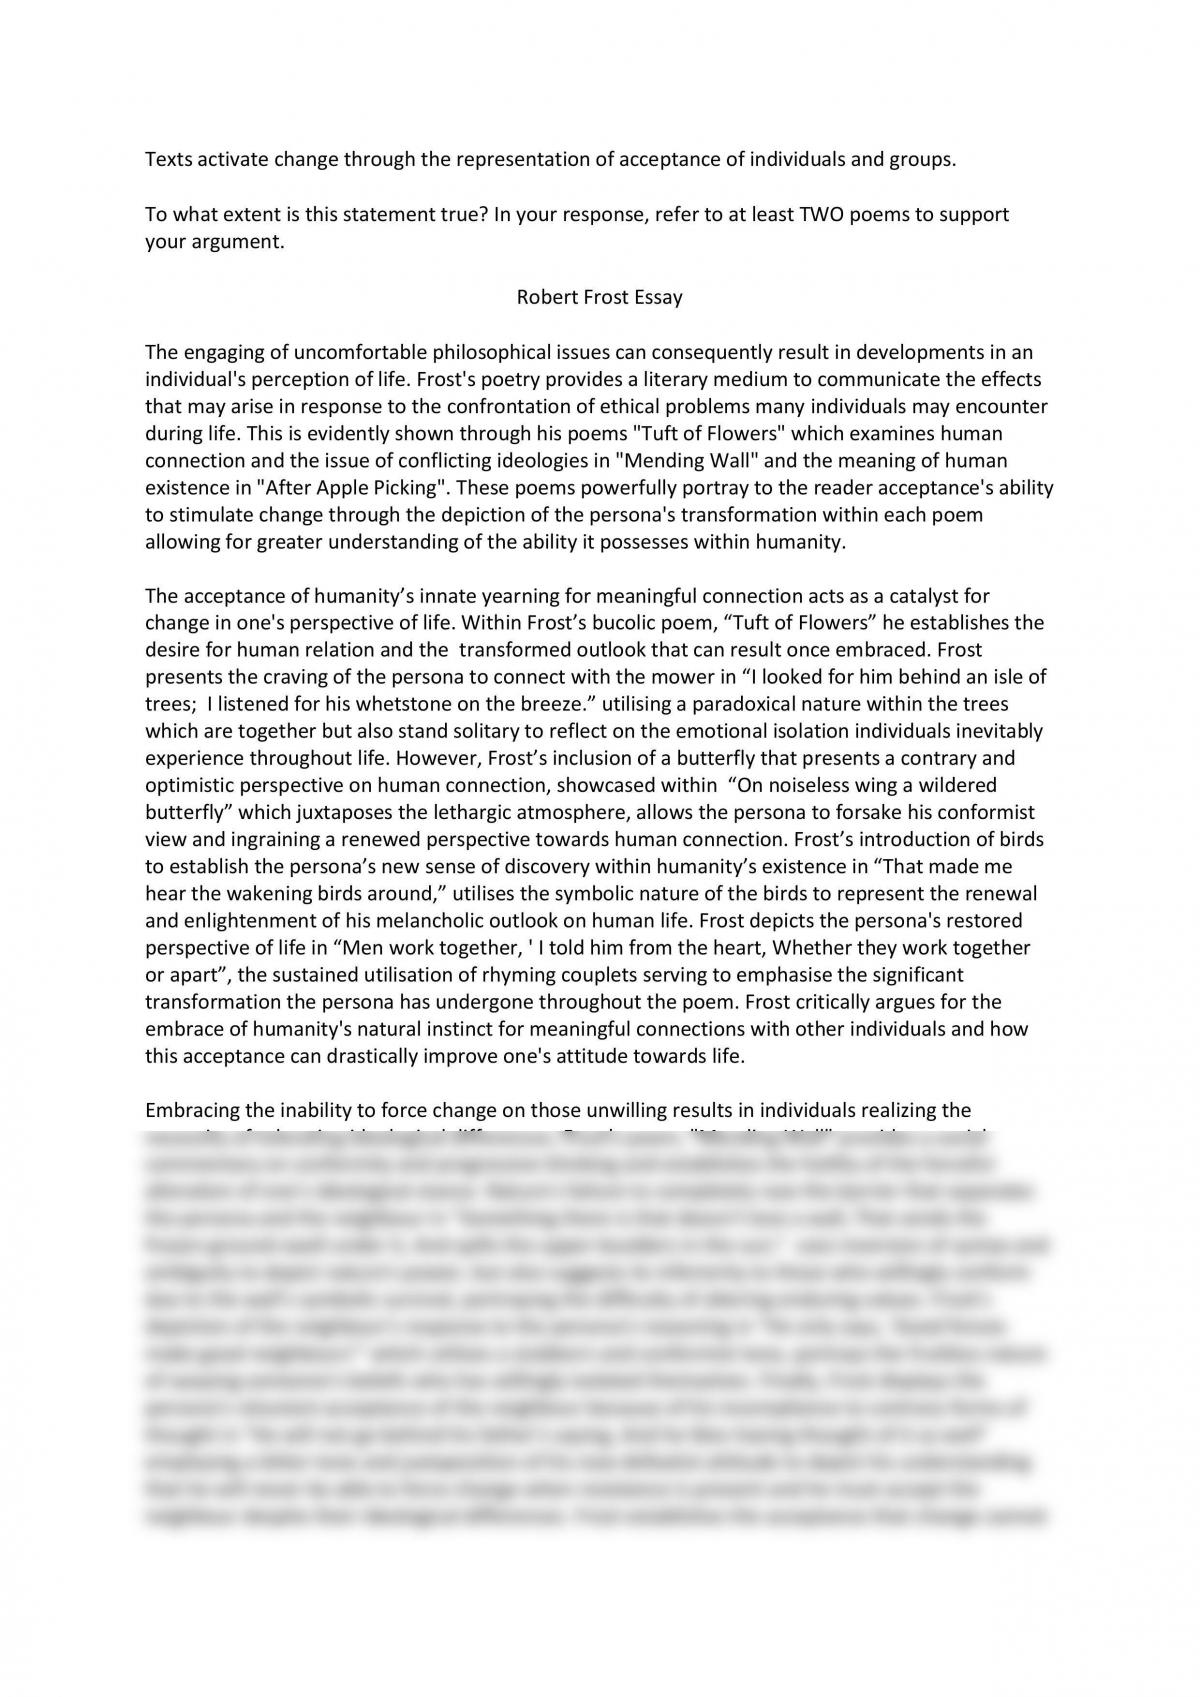 Реферат: Robert Frost Essay Research Paper Frost Robert